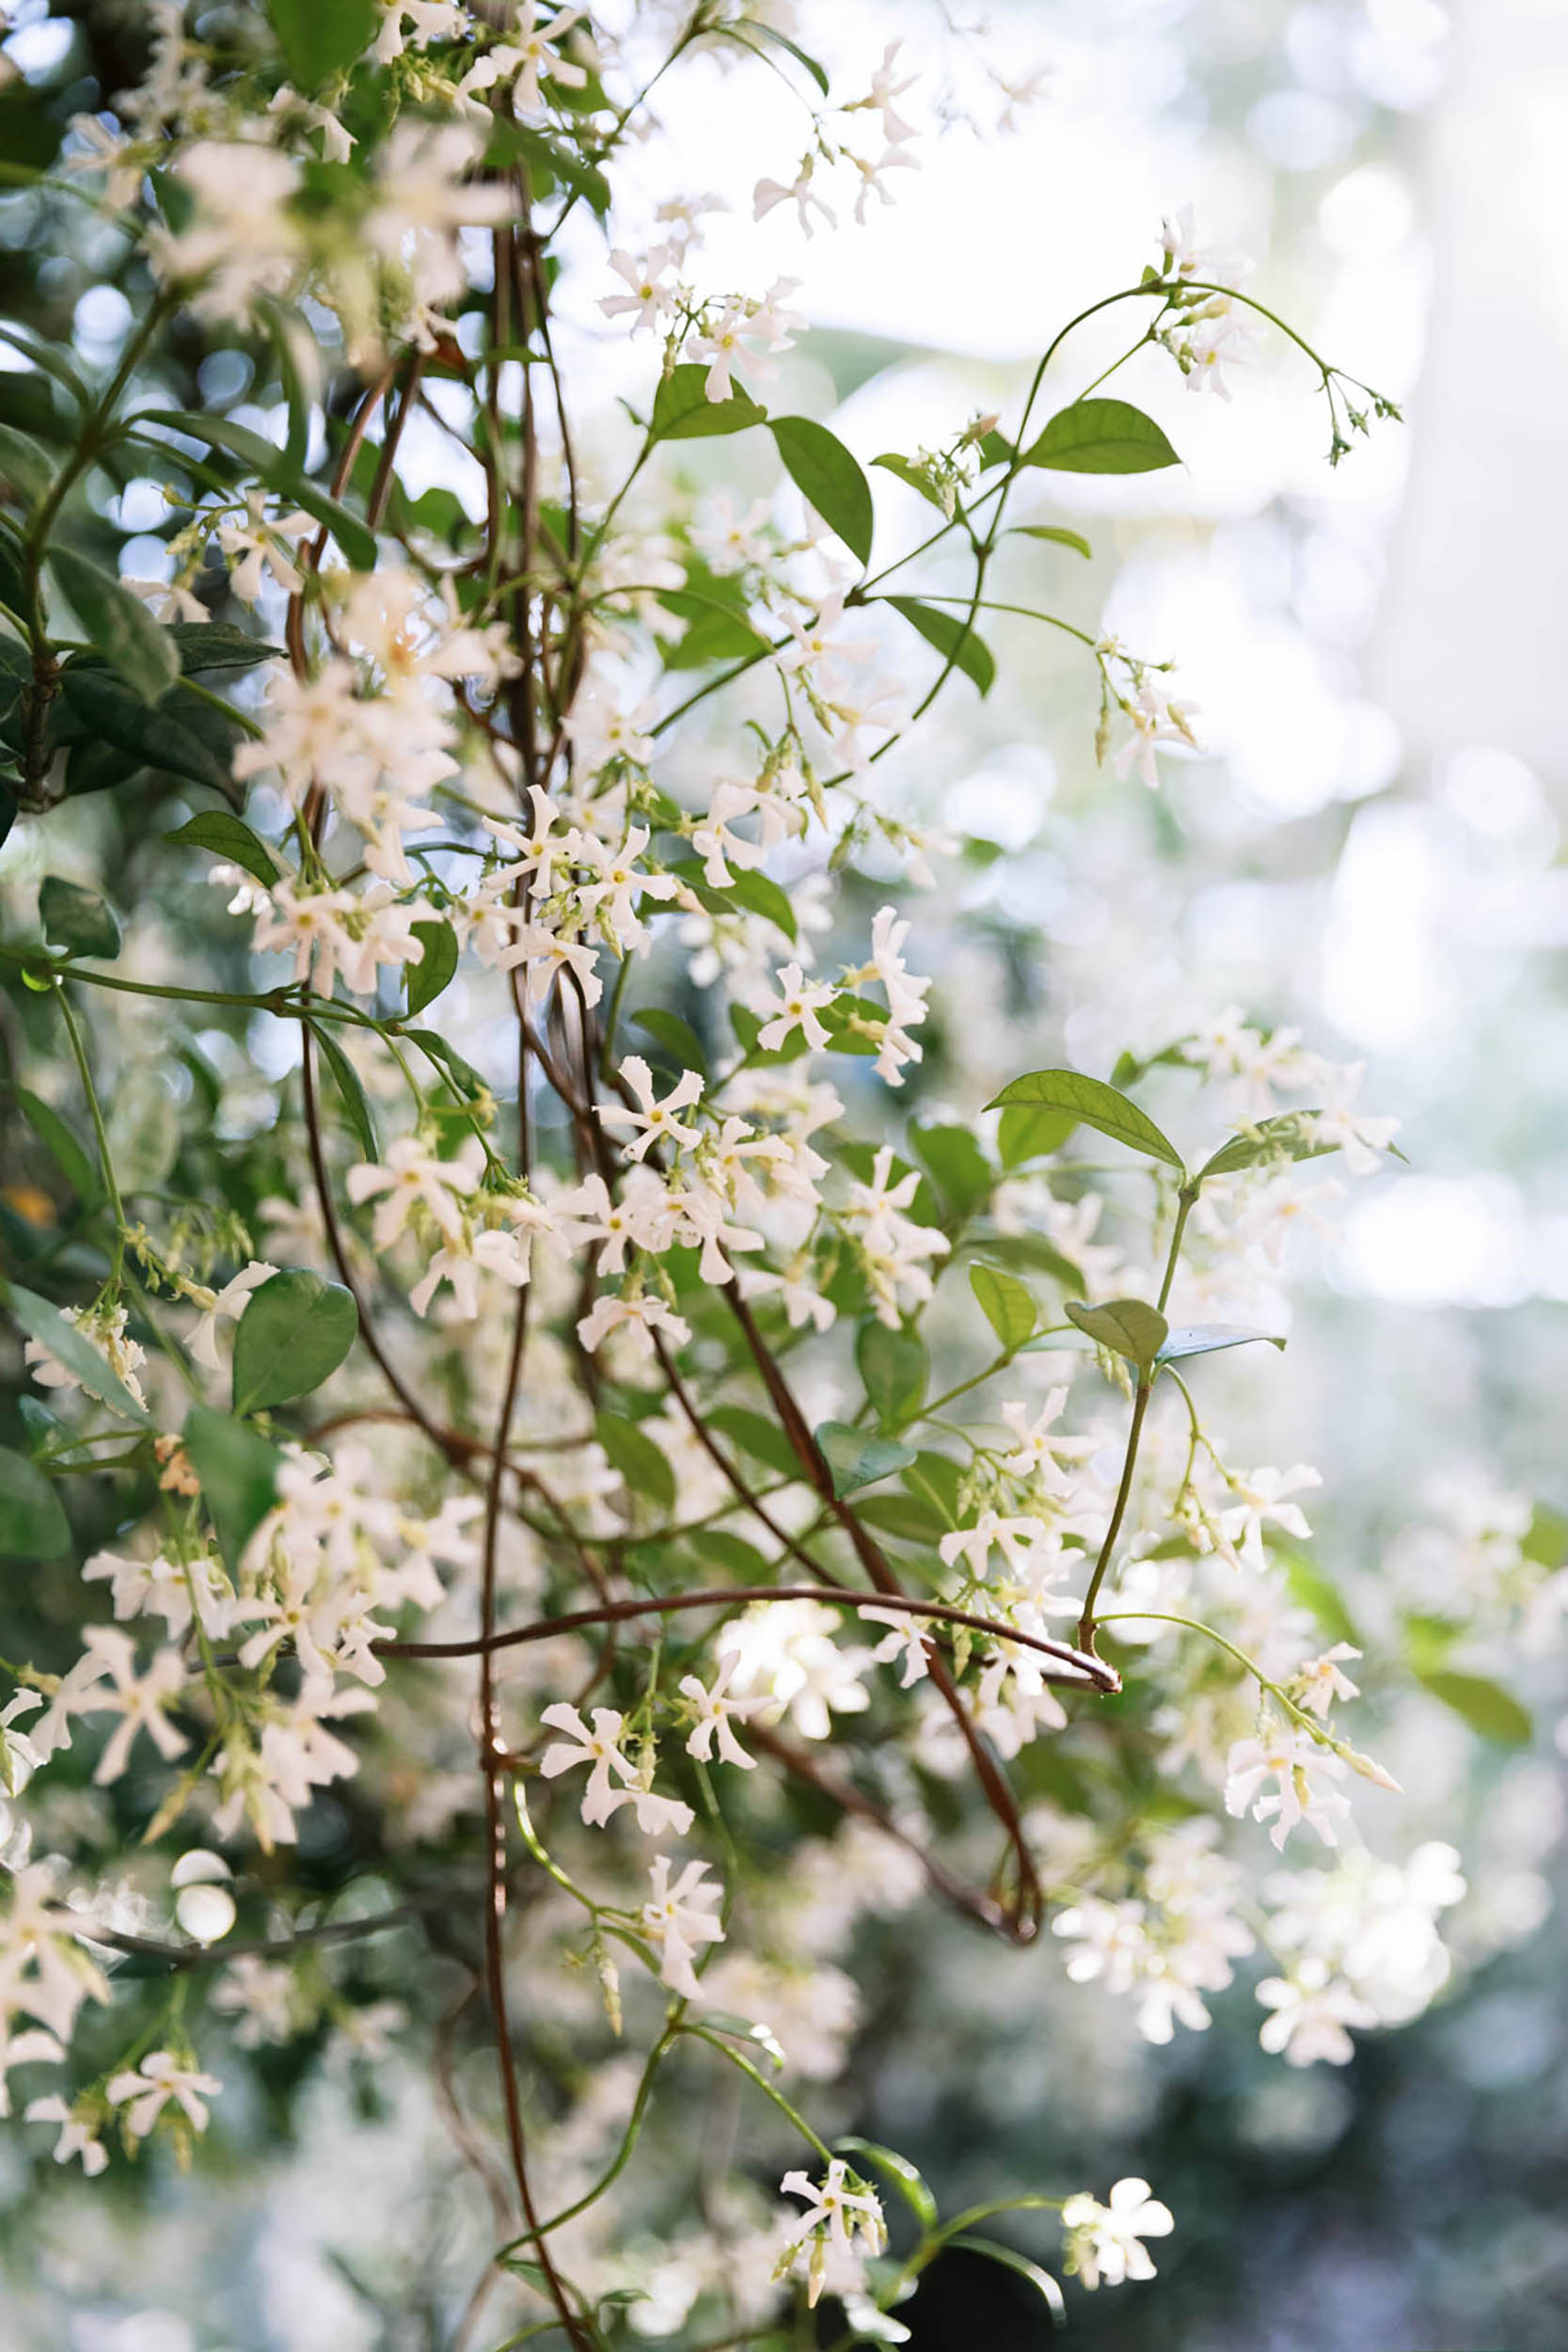 Blooming jasmine vine
